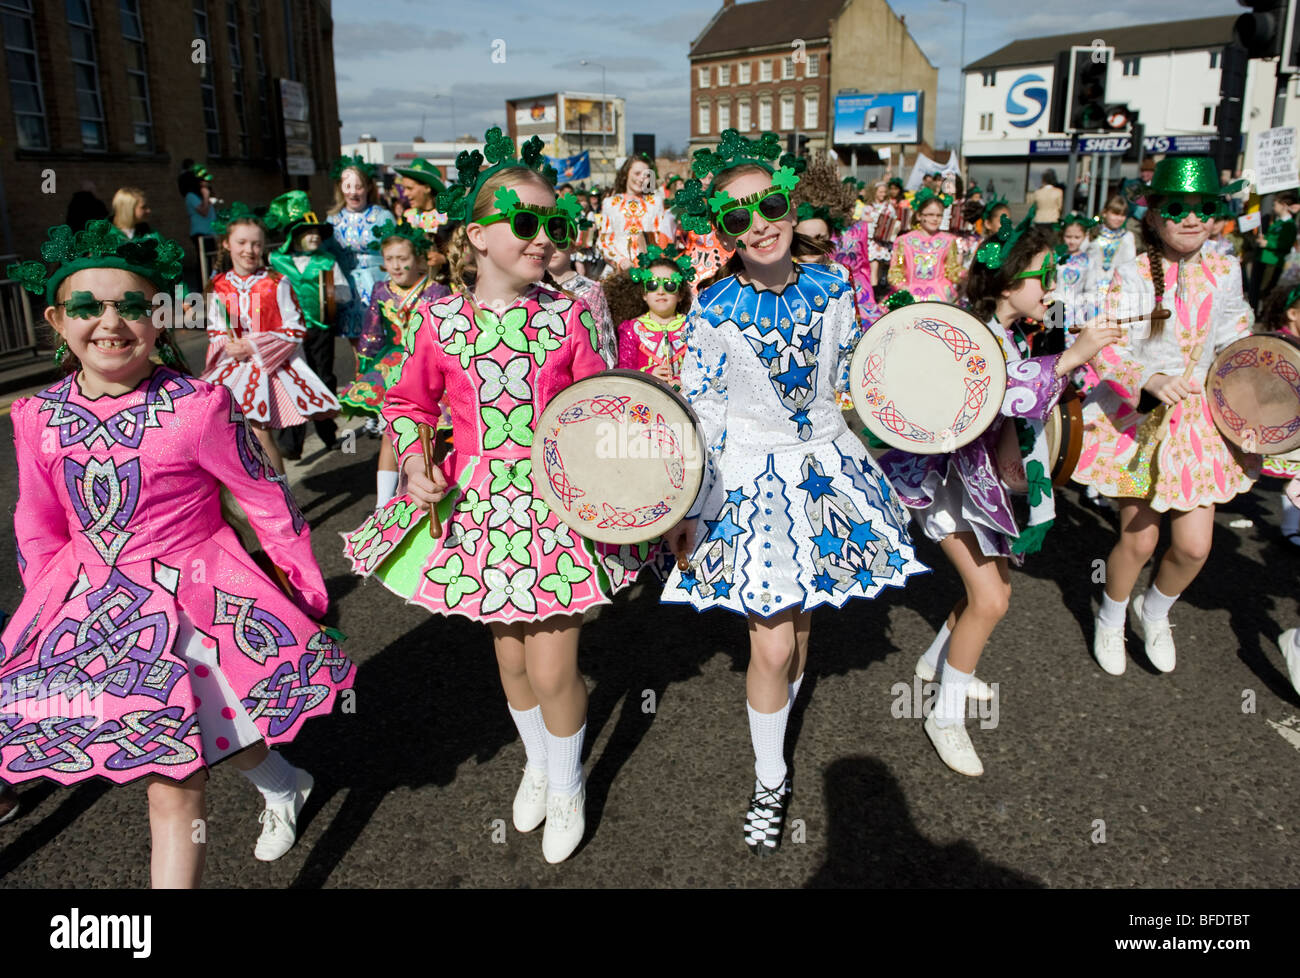 Les danseurs irlandais lors de la Parade de la St Patrick à Digbeth Birmingham, Angleterre, RU Banque D'Images